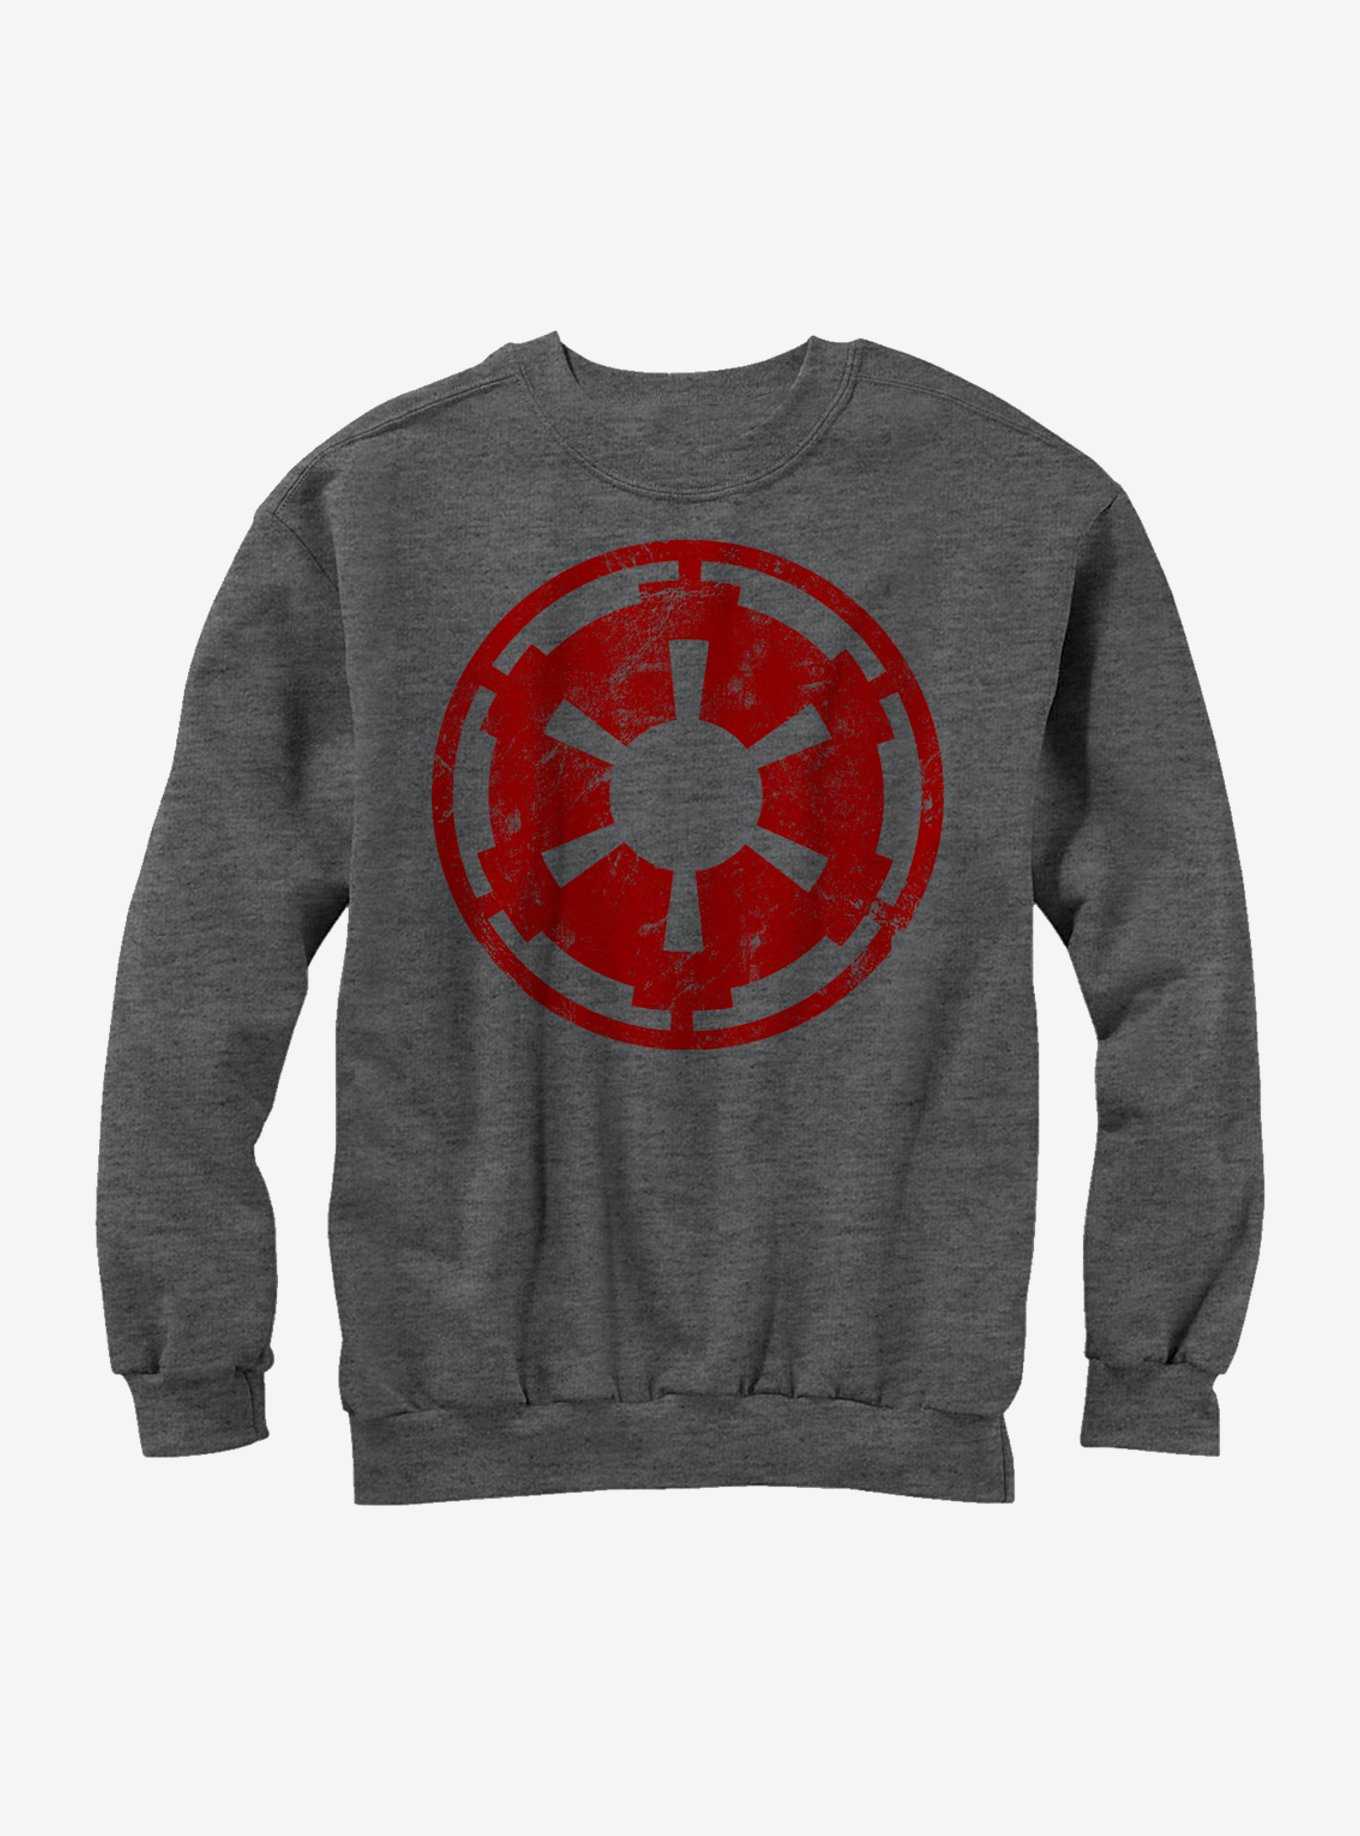 Star Wars Empire Emblem Sweatshirt, , hi-res